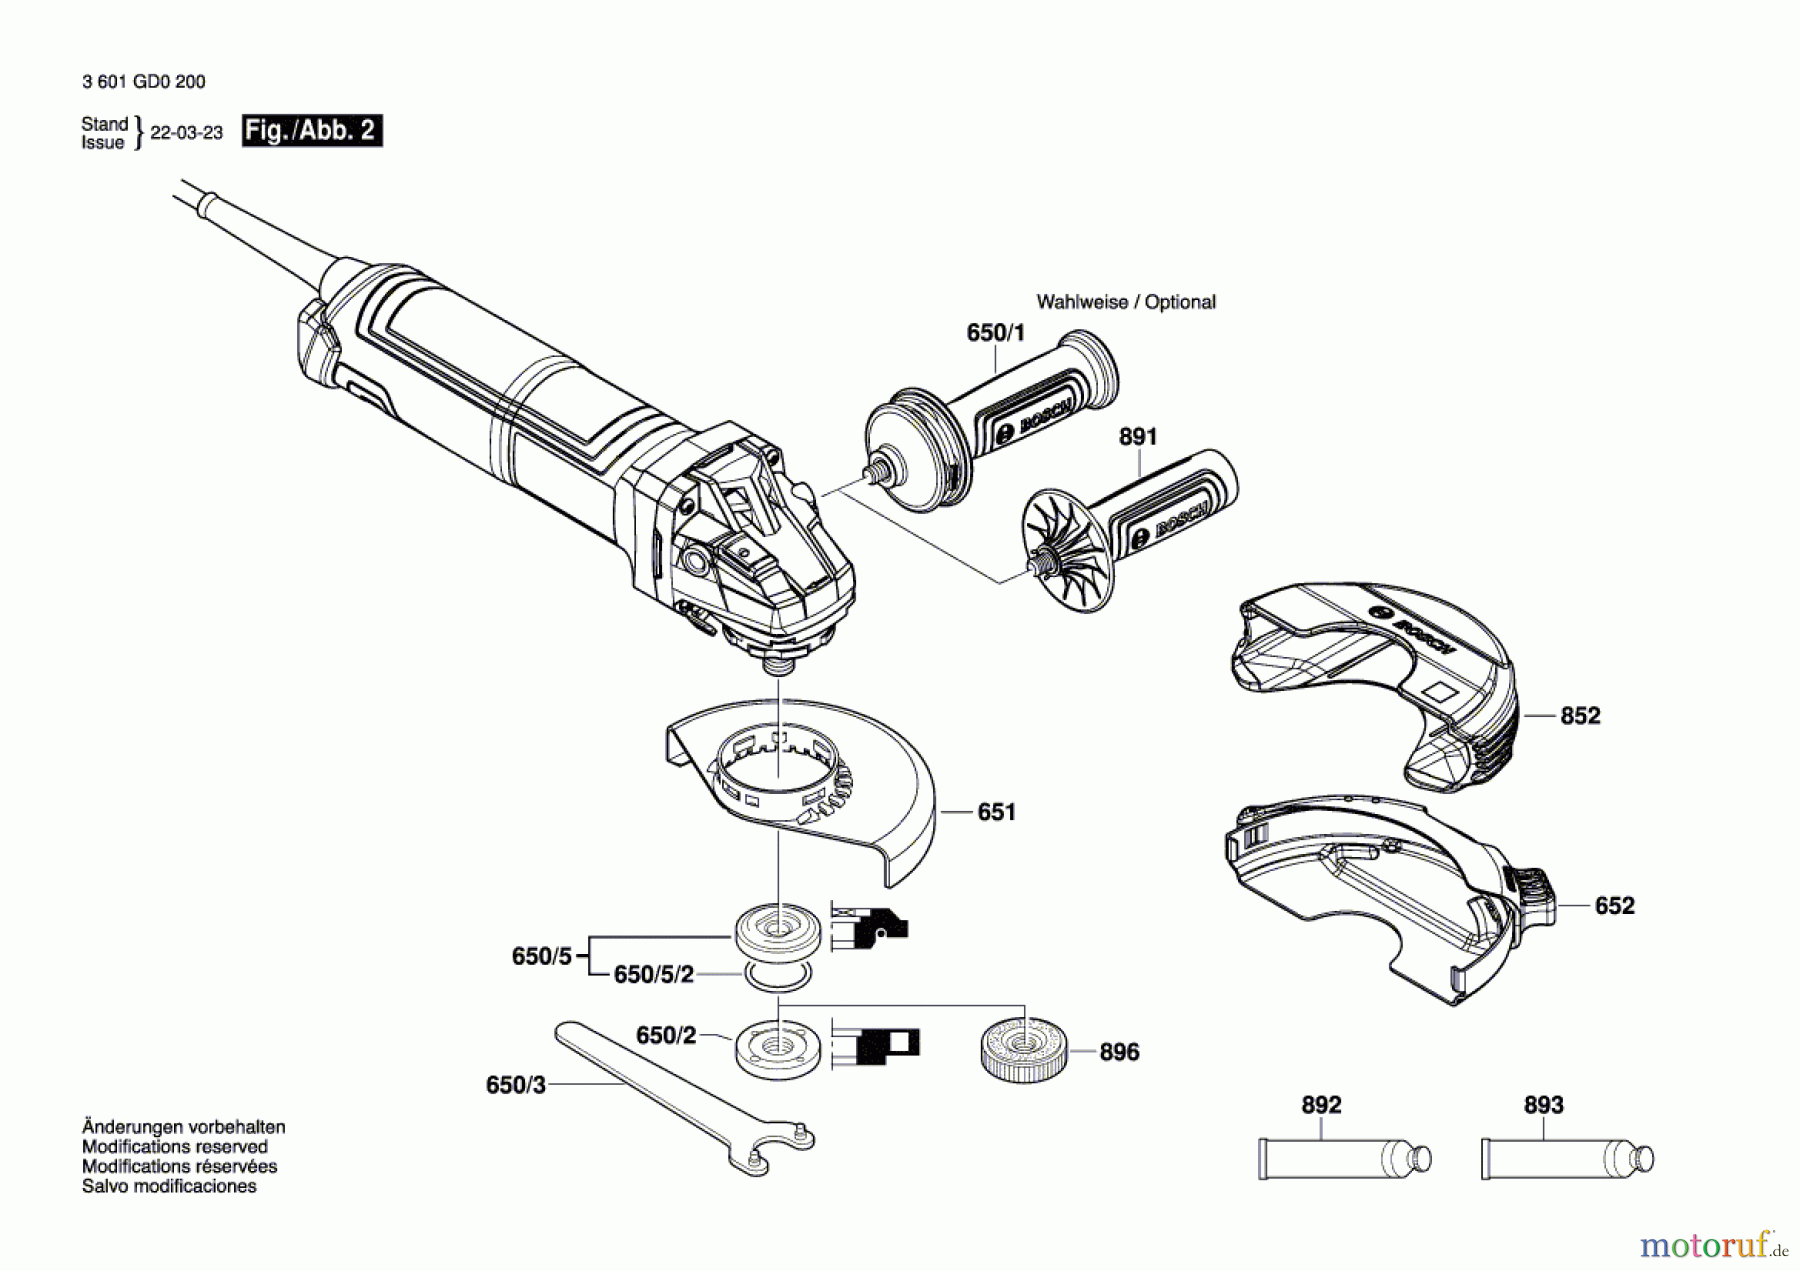  Bosch Werkzeug Winkelschleifer GWS 17-125 Seite 2